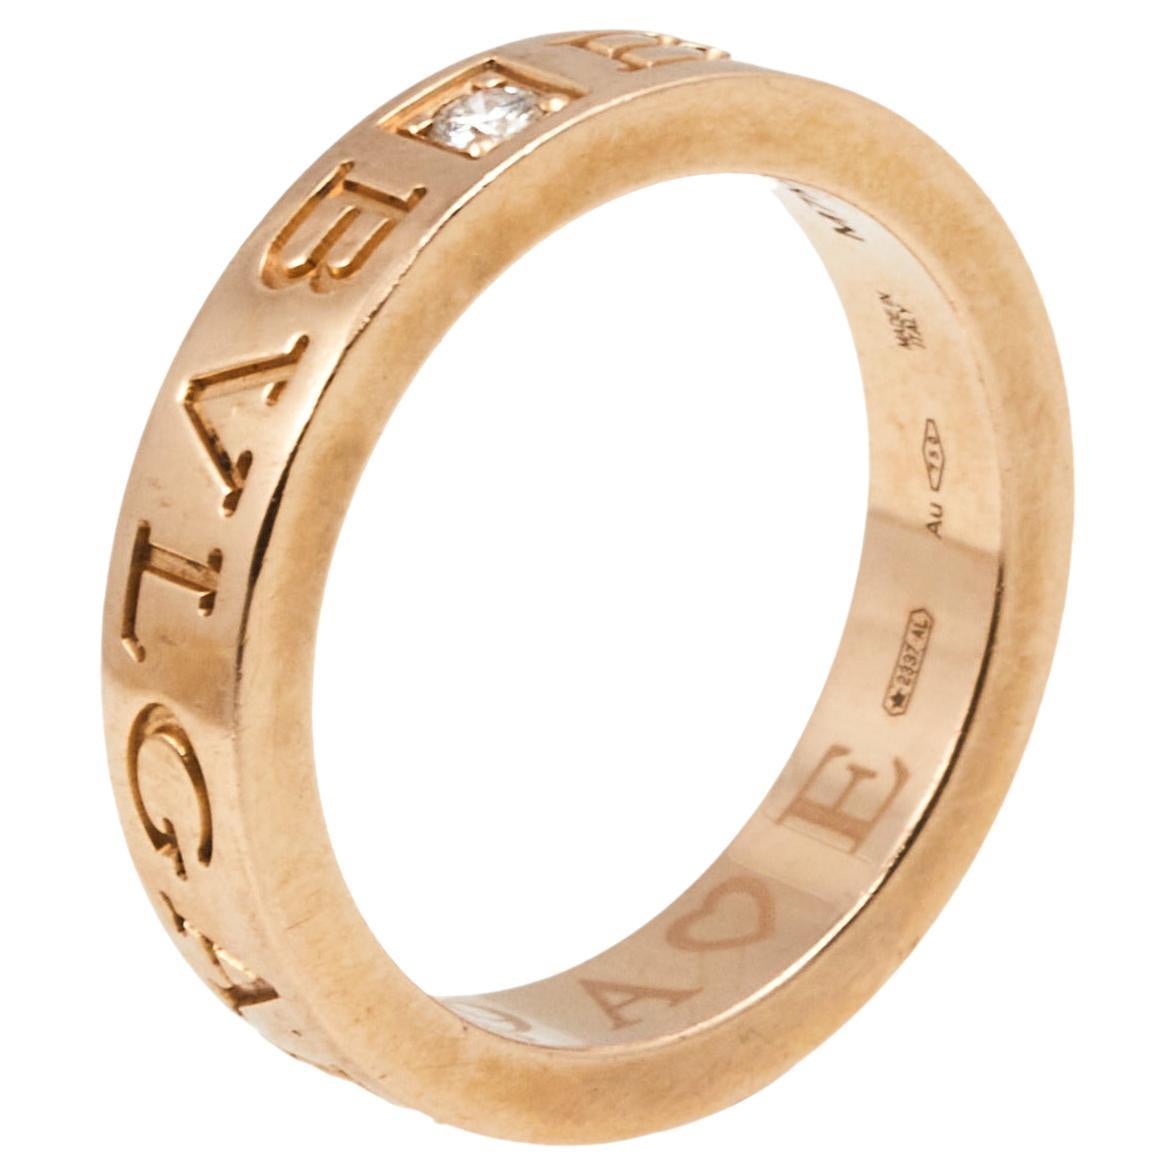 Bvlgari Bvlgari Diamond 18k Rose Gold Band Ring Size 51